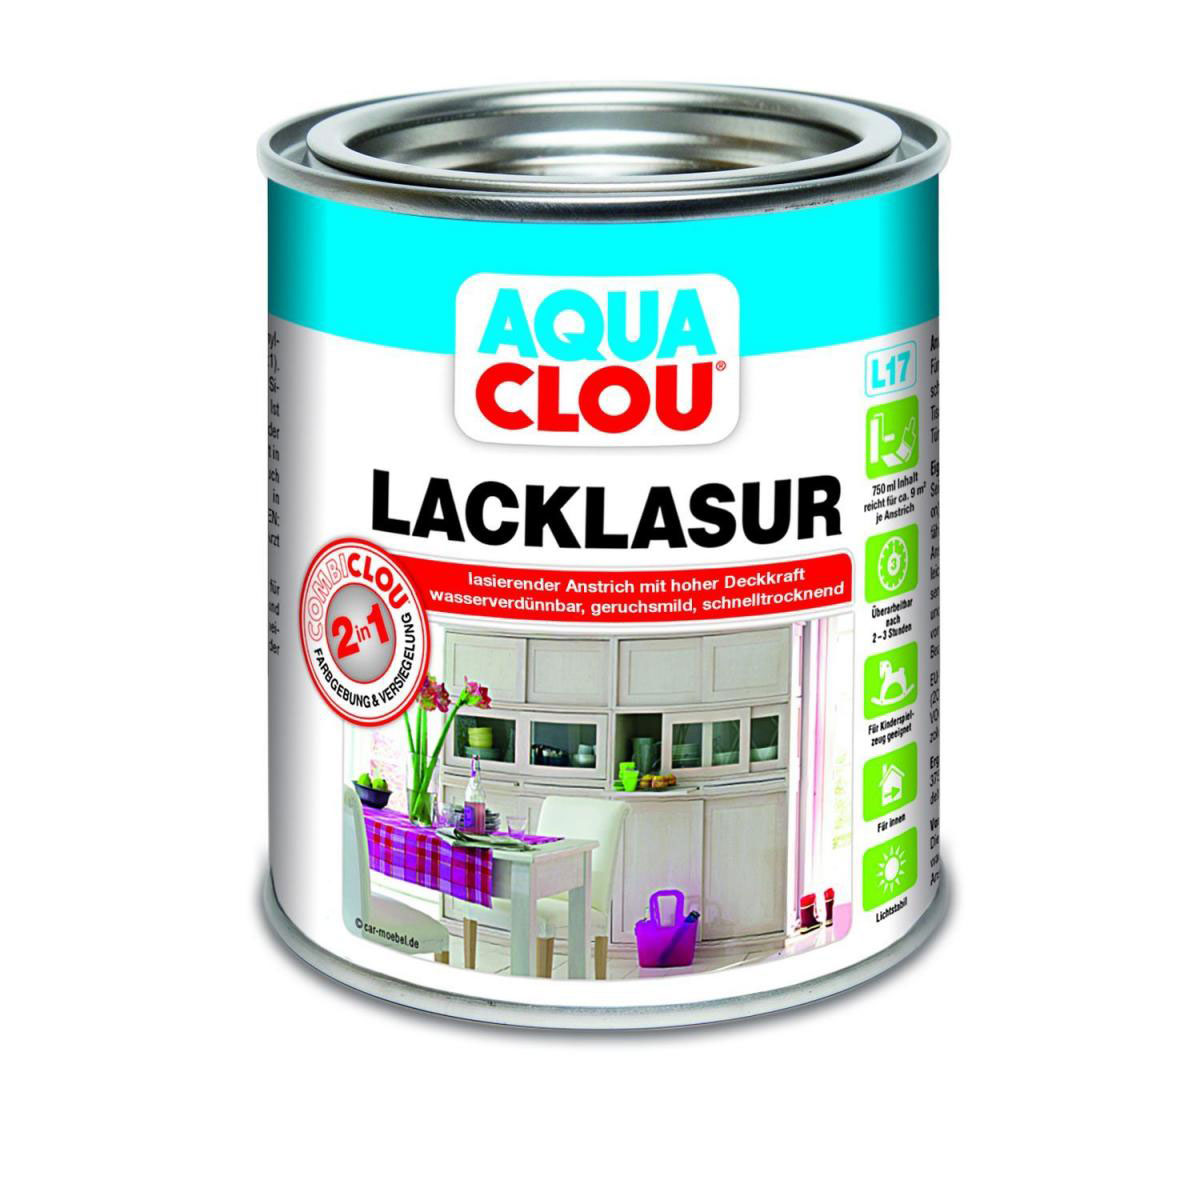 Clou L17 Aqua Lacklasur „Farblos“, 750 ml